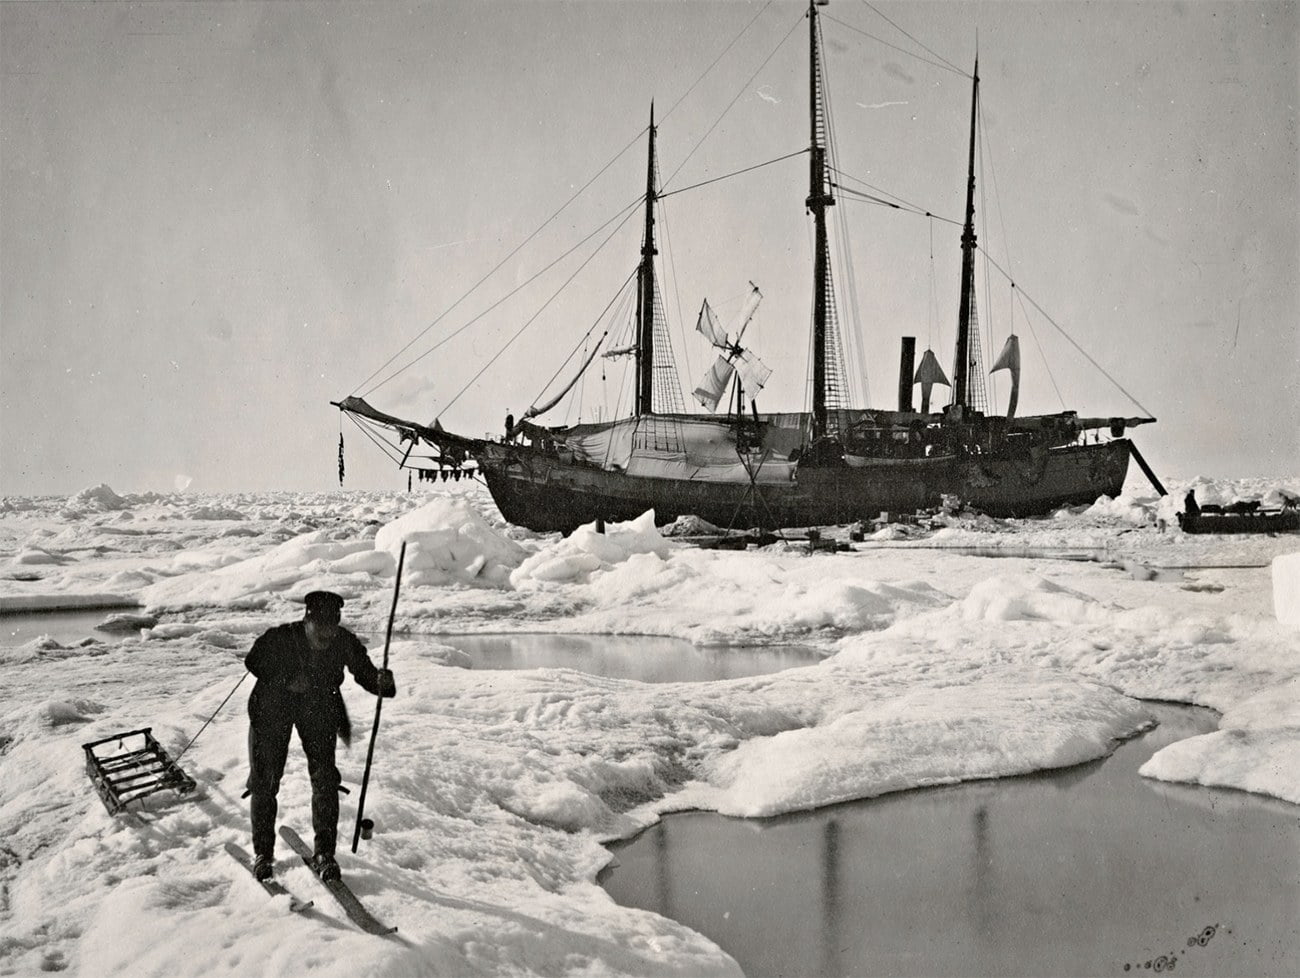 imagem do navio FRAM, de Fridtjof Nansen, no gelo